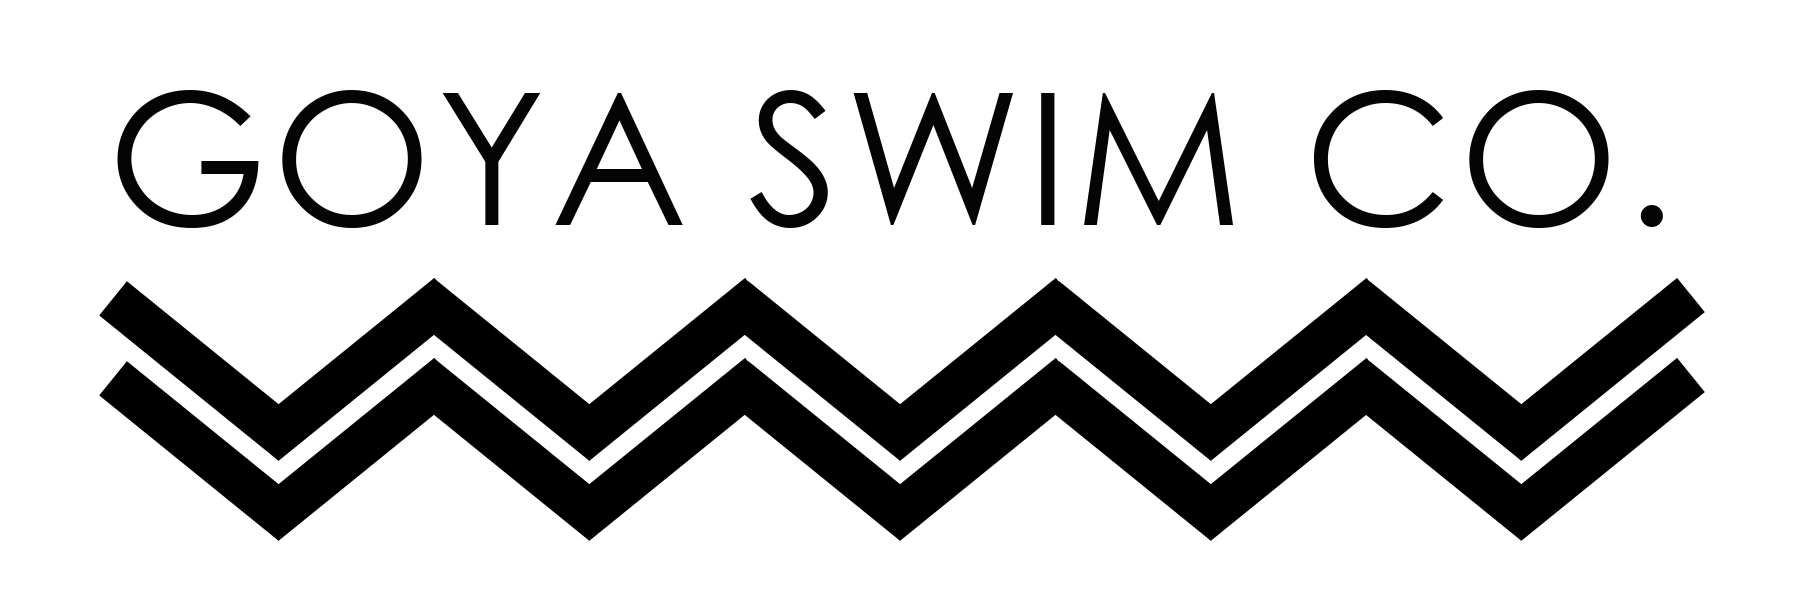 Goya Swim India